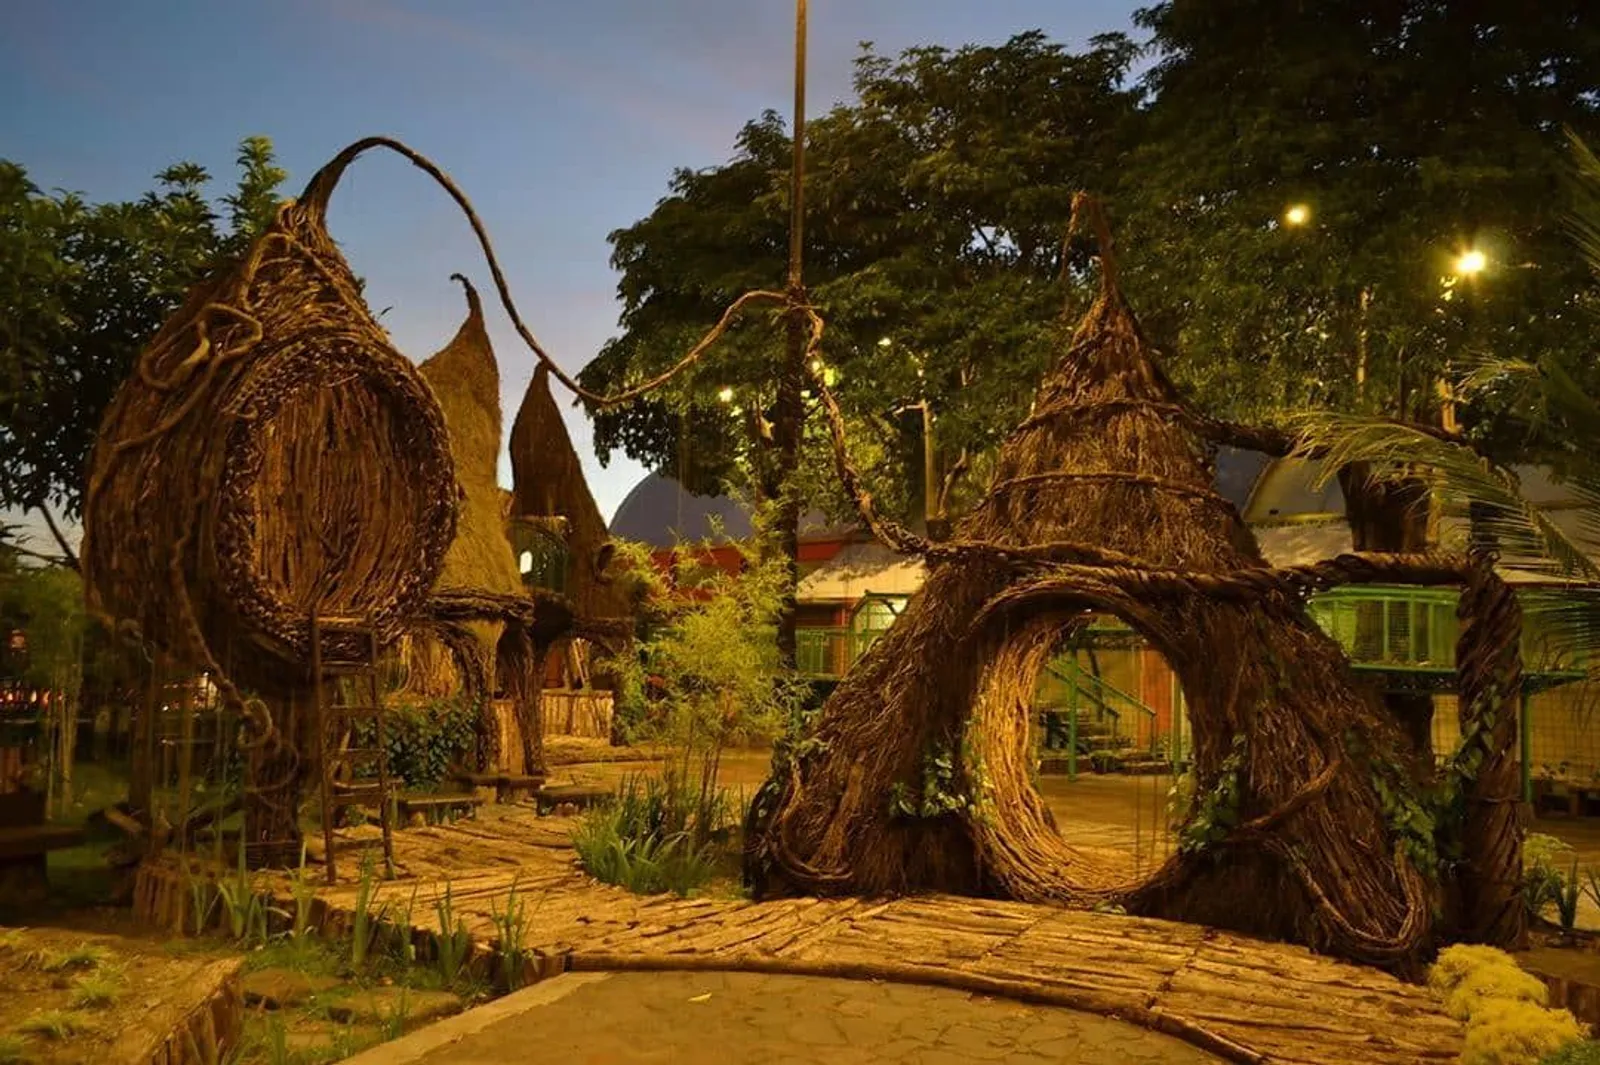 20 Tempat Wisata di Yogyakarta yang Lagi Hits dan Kekinian, Seru Abis!